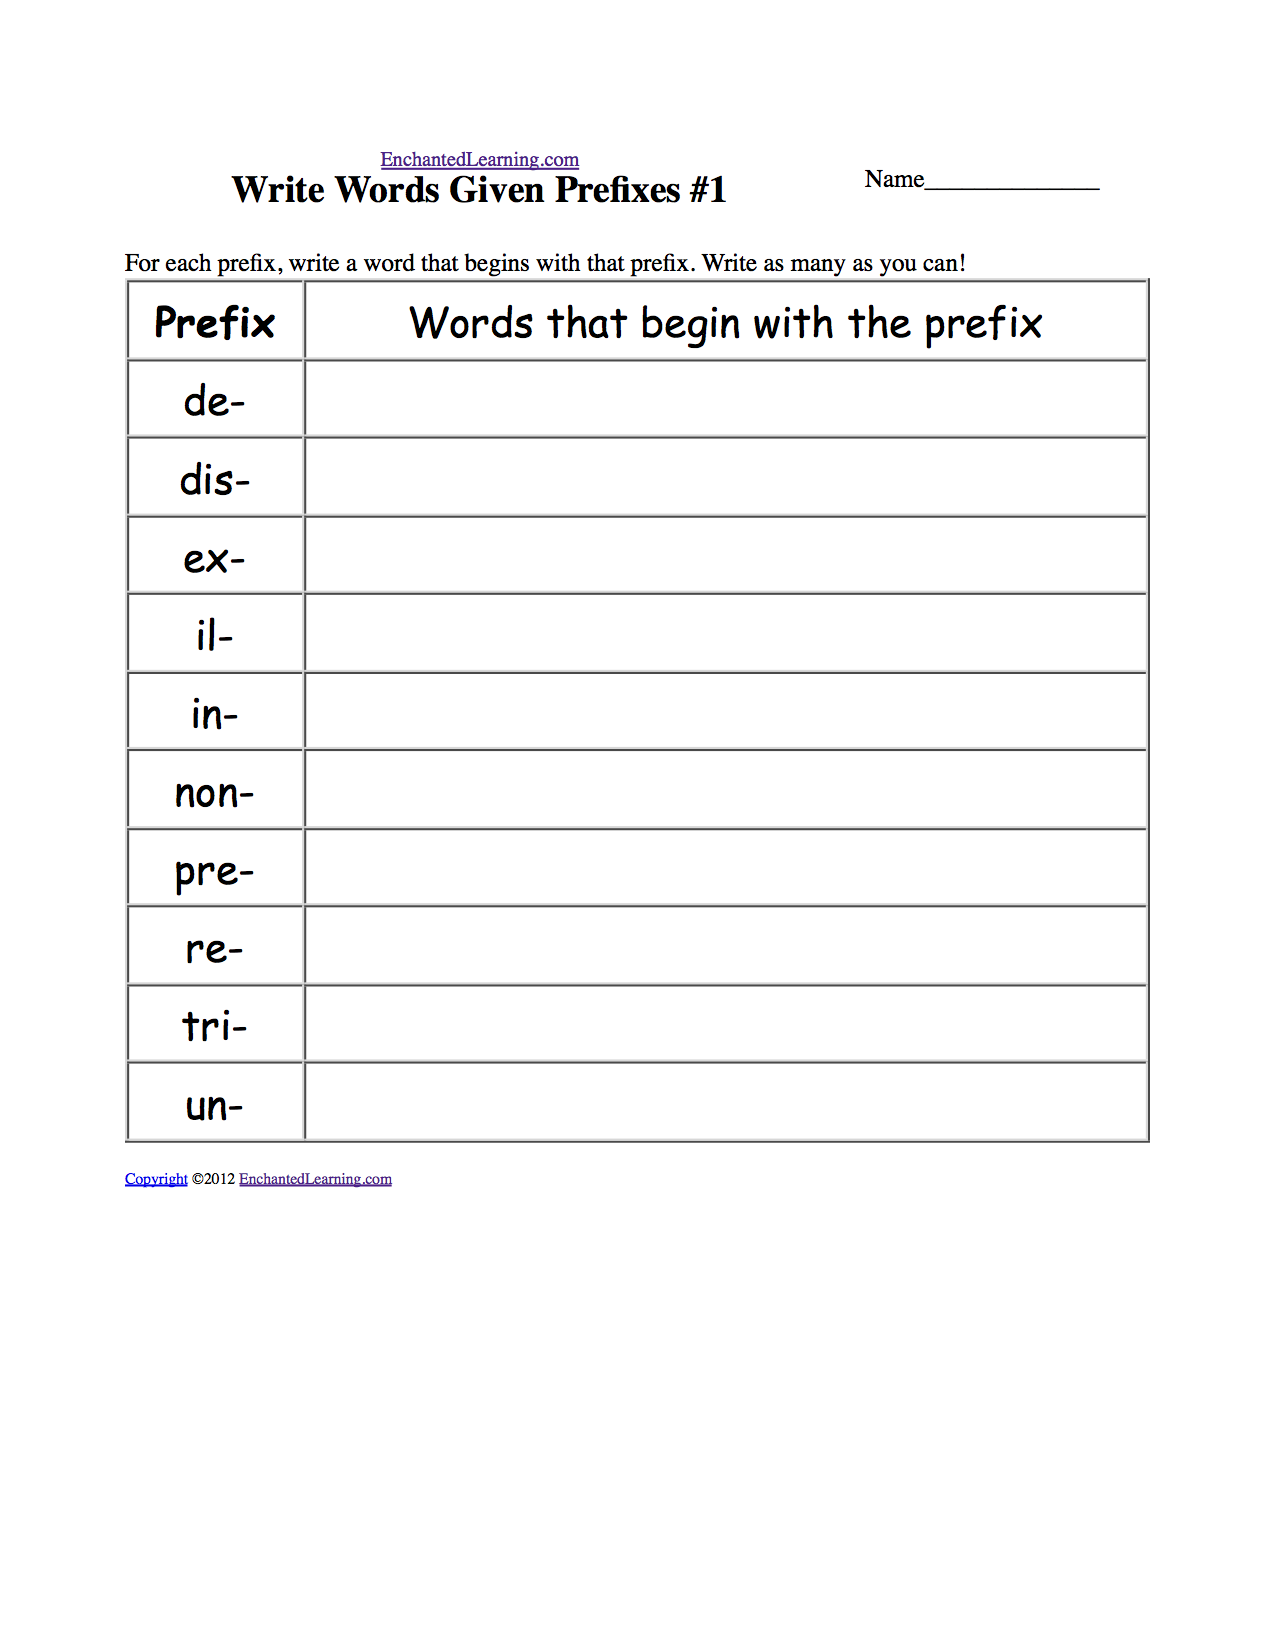 Write Words Given Prefixes #1